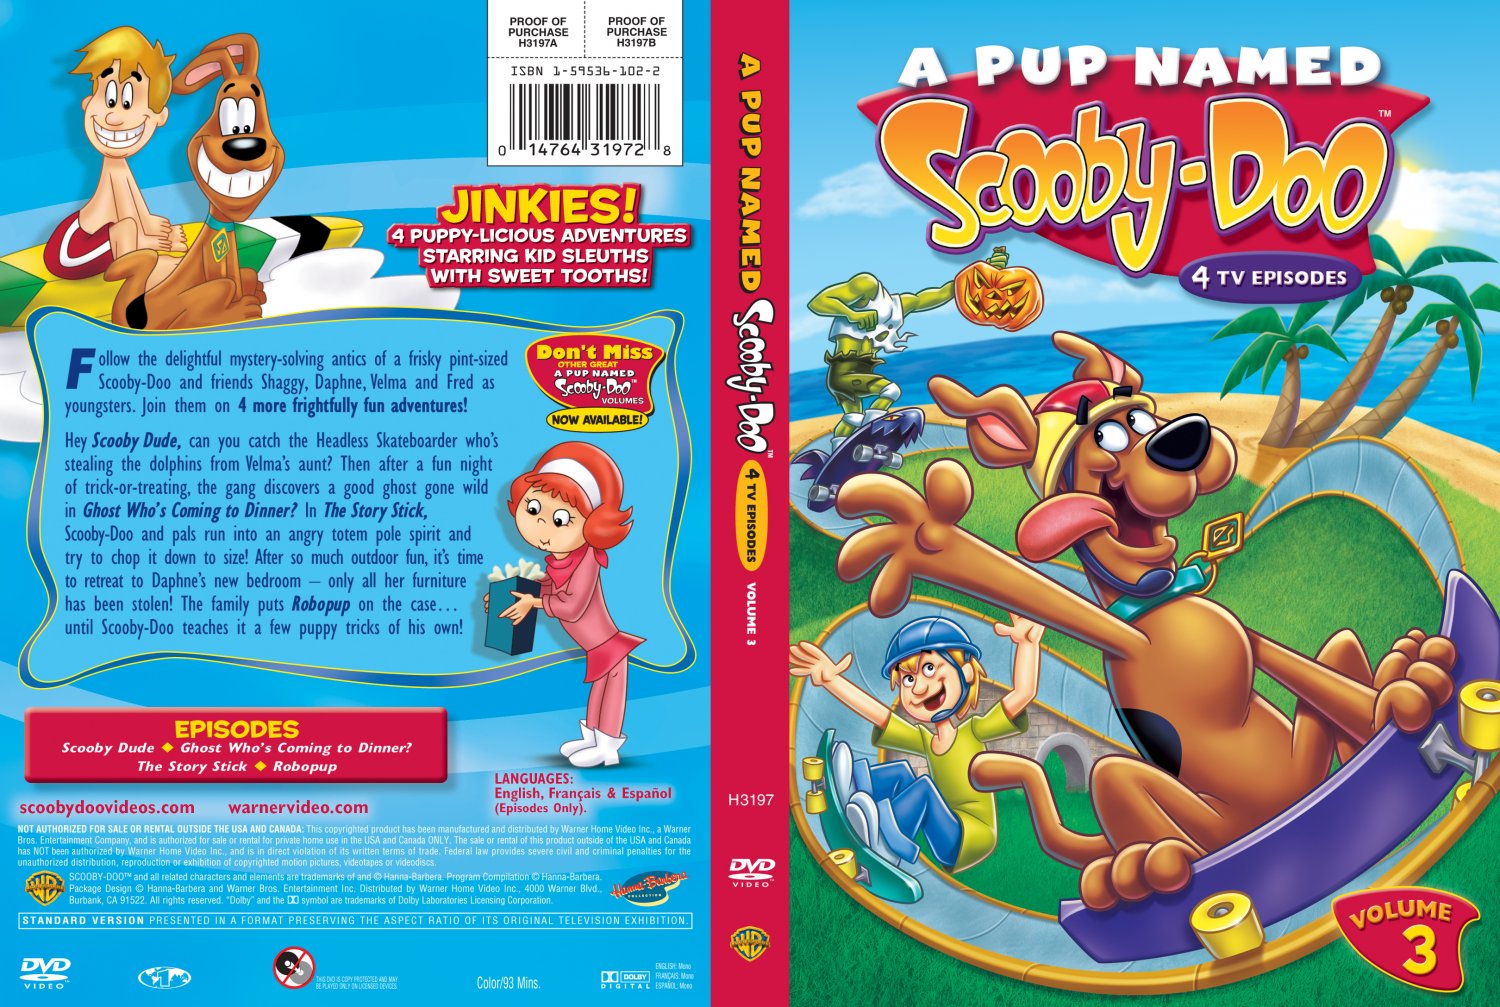 A Pup Named Scooby-Doo Vol 3.